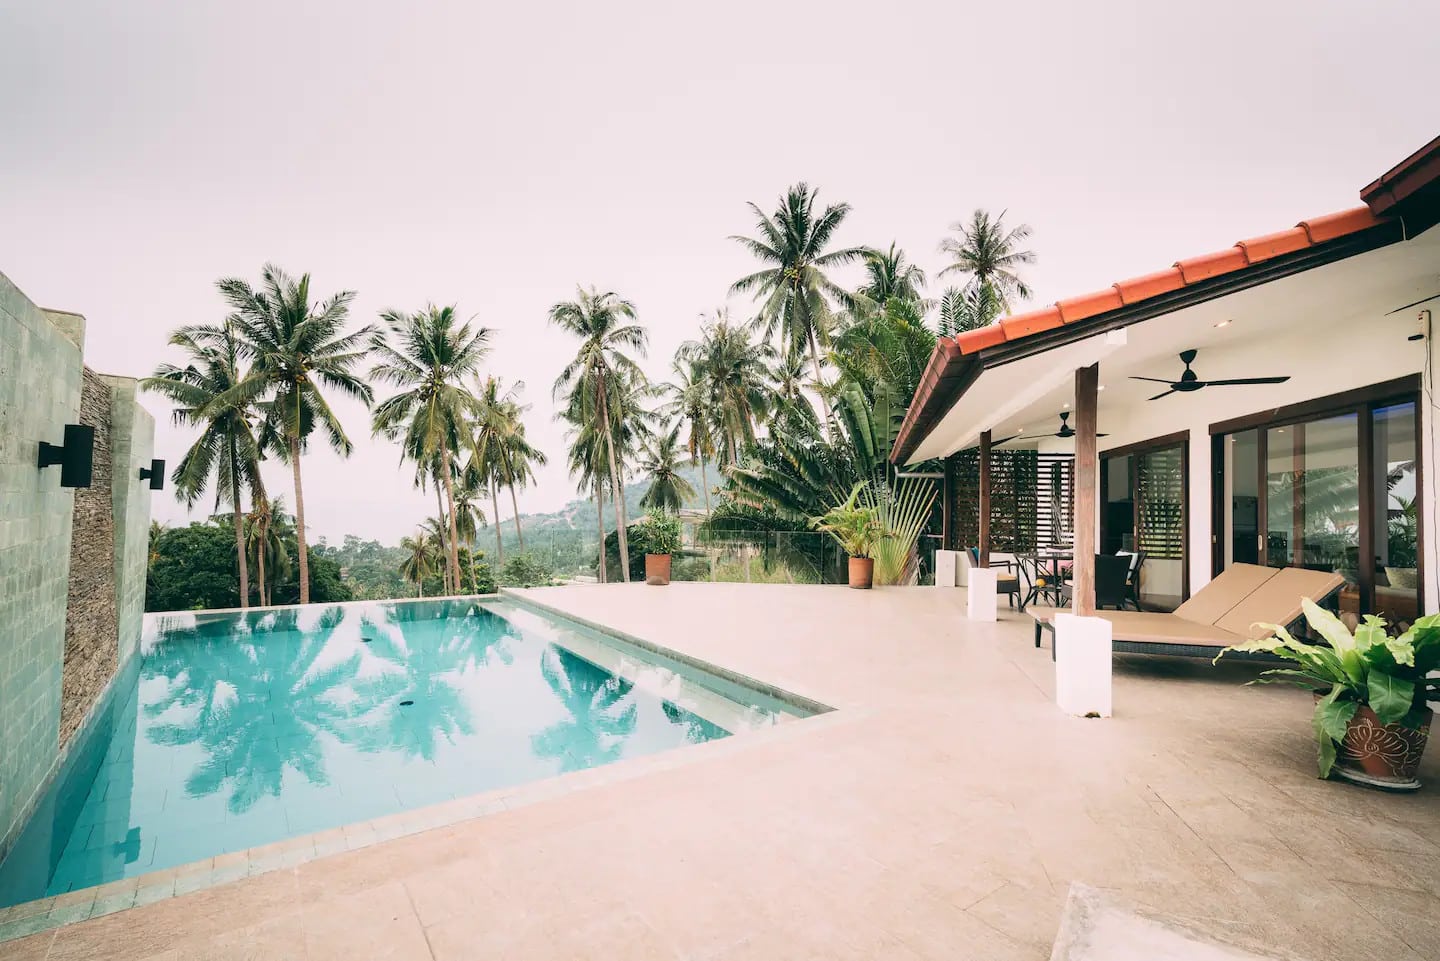 The Private Pool Villa With Sea Views in Koh Samui